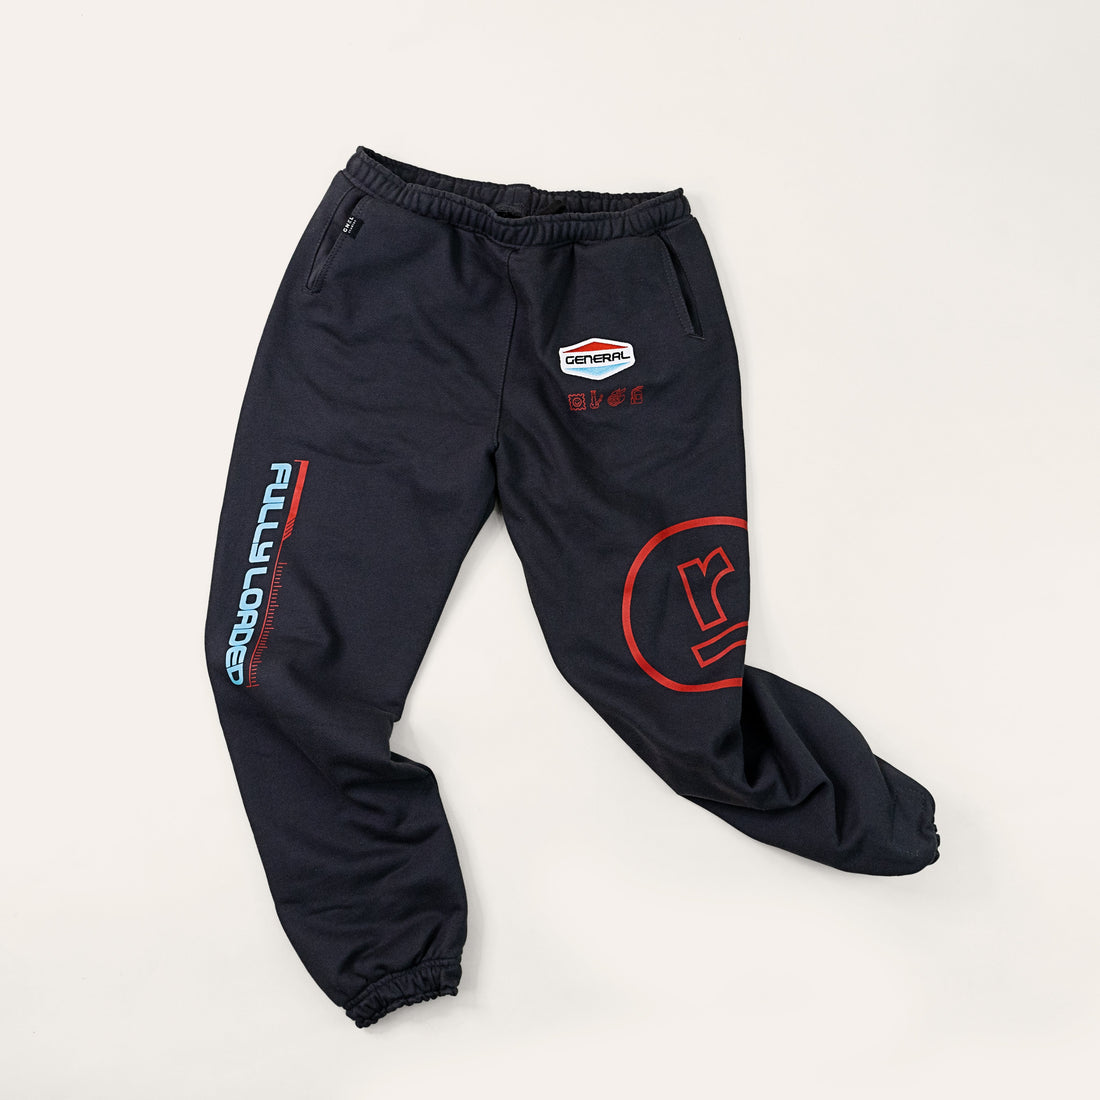 Zubaz NFL Las Vegas Raiders Men's Track Pants with Static Side Stripes,  Solid Black, Small (Nfl Men's Track Pant) - Team colour, size: s :  Amazon.de: Sports & Outdoors